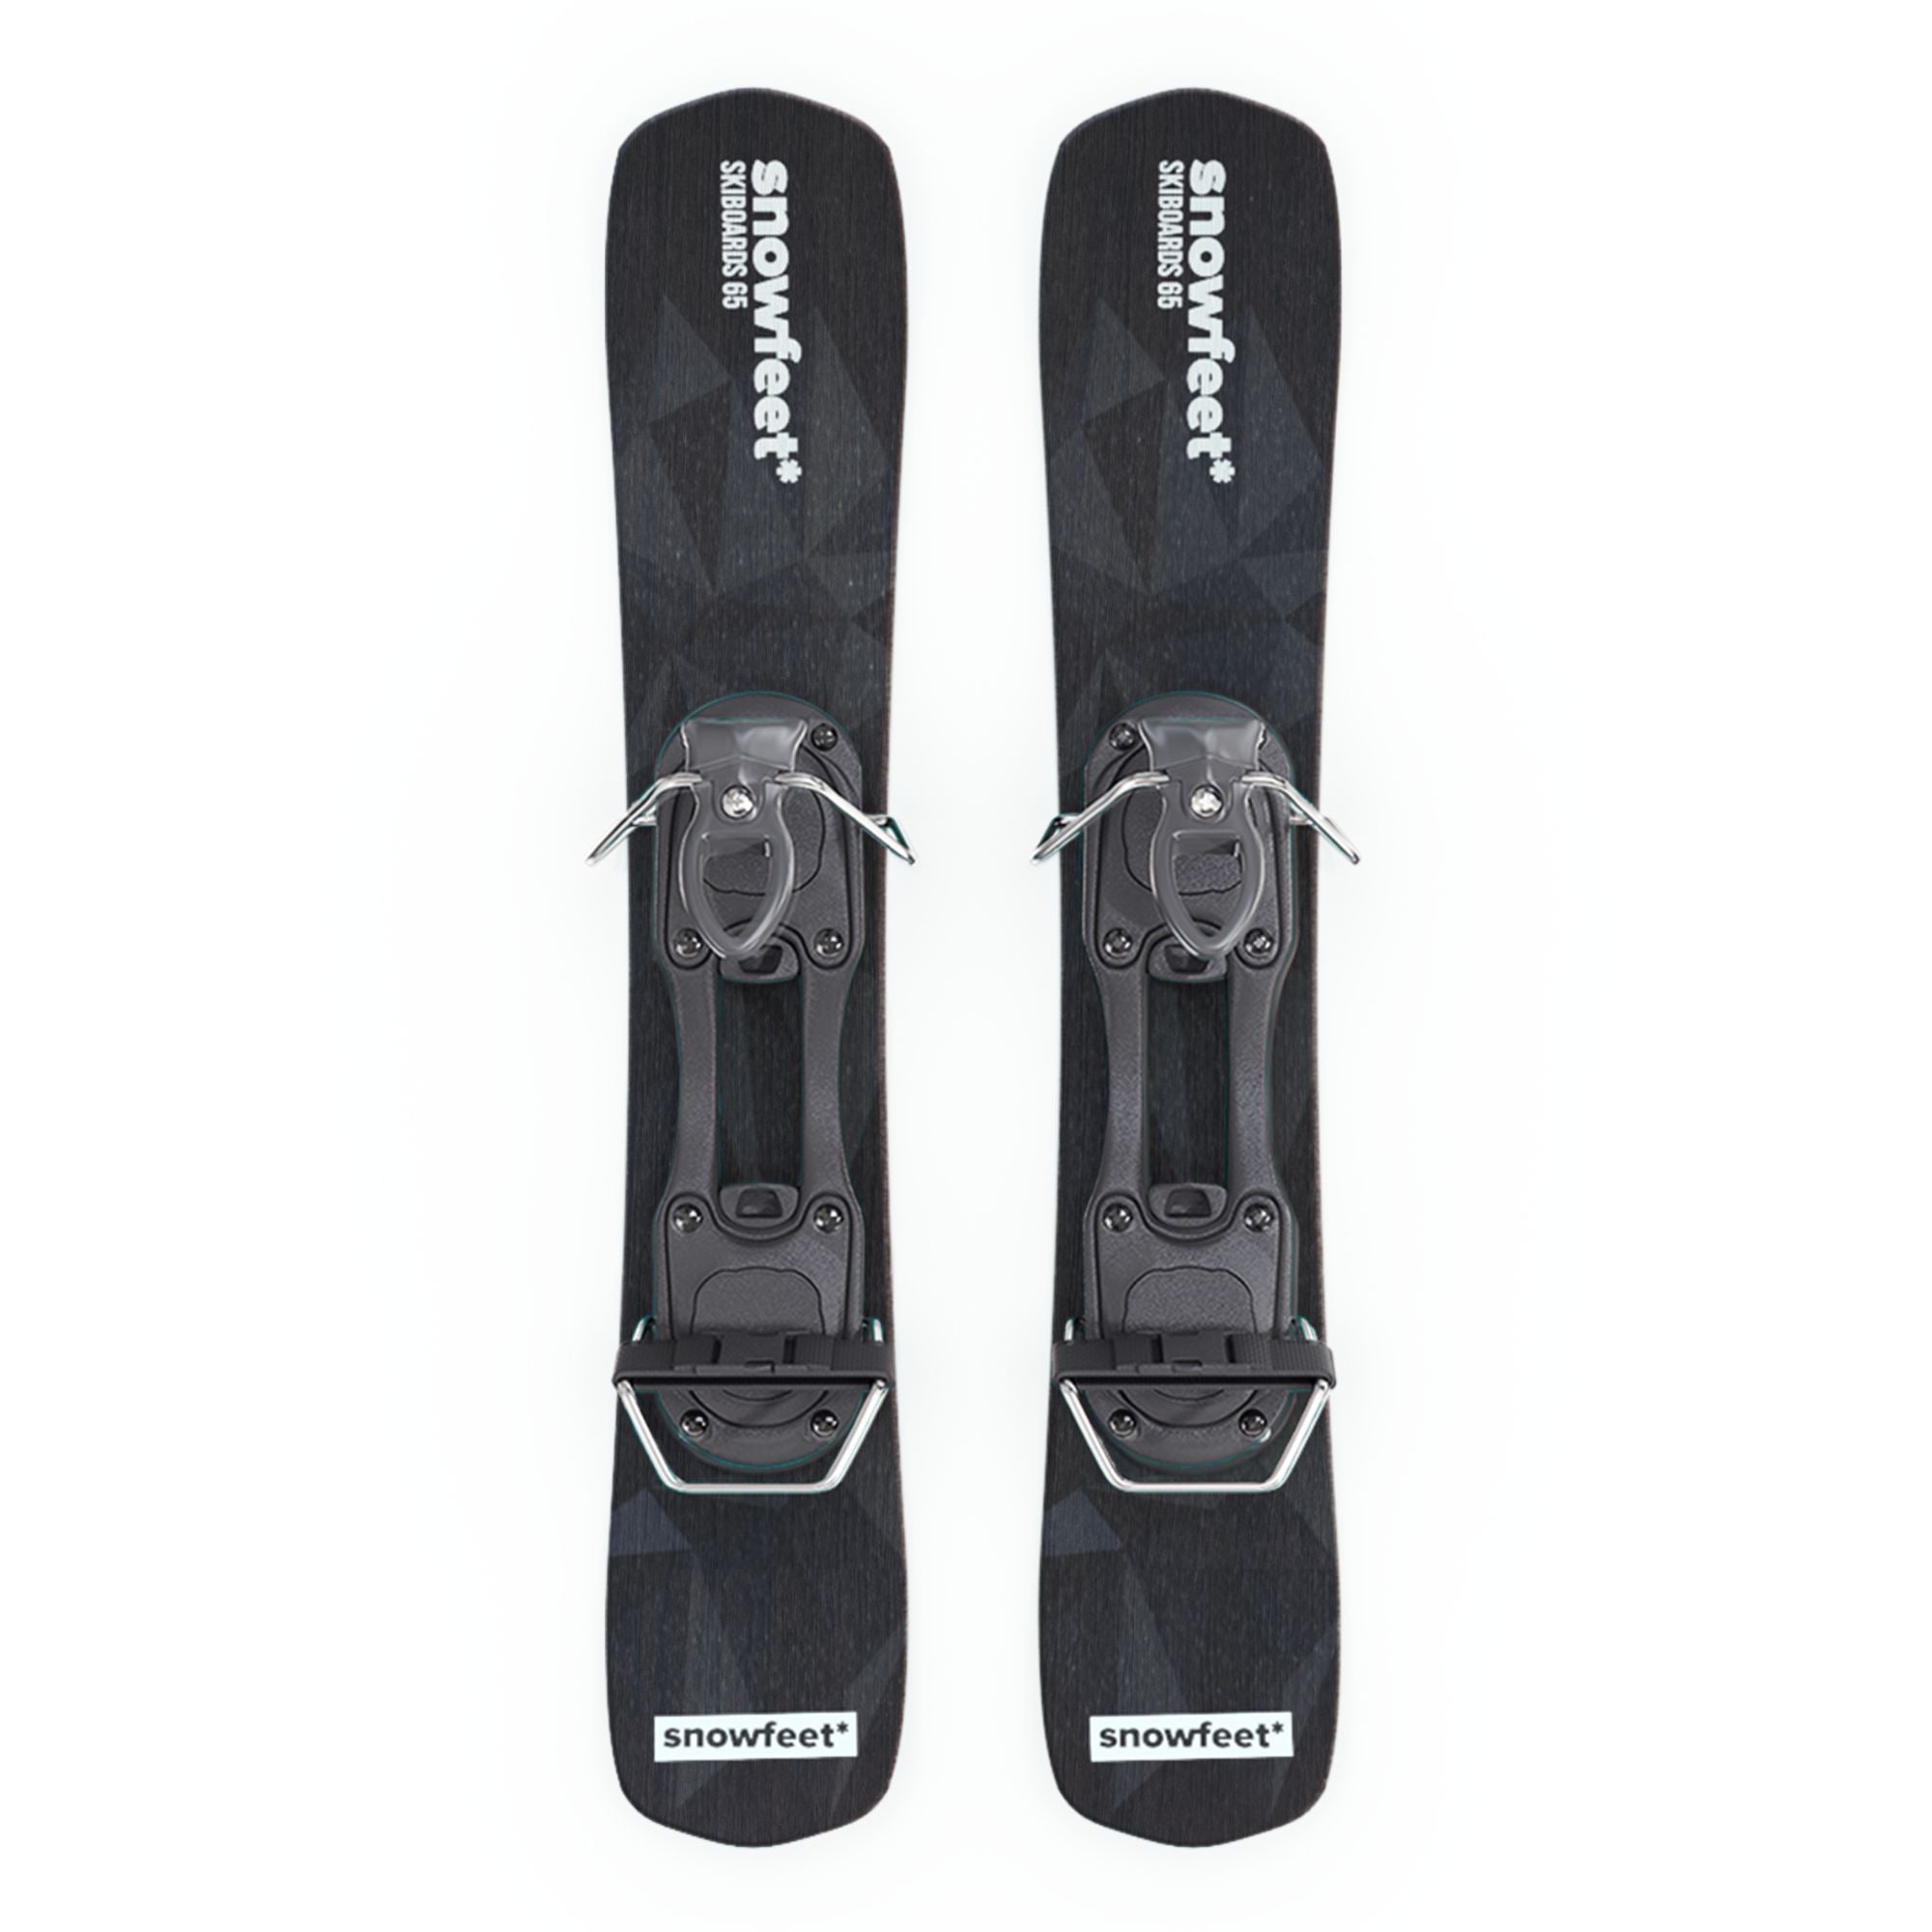  Short Mini Skis for Snow, 65 cm